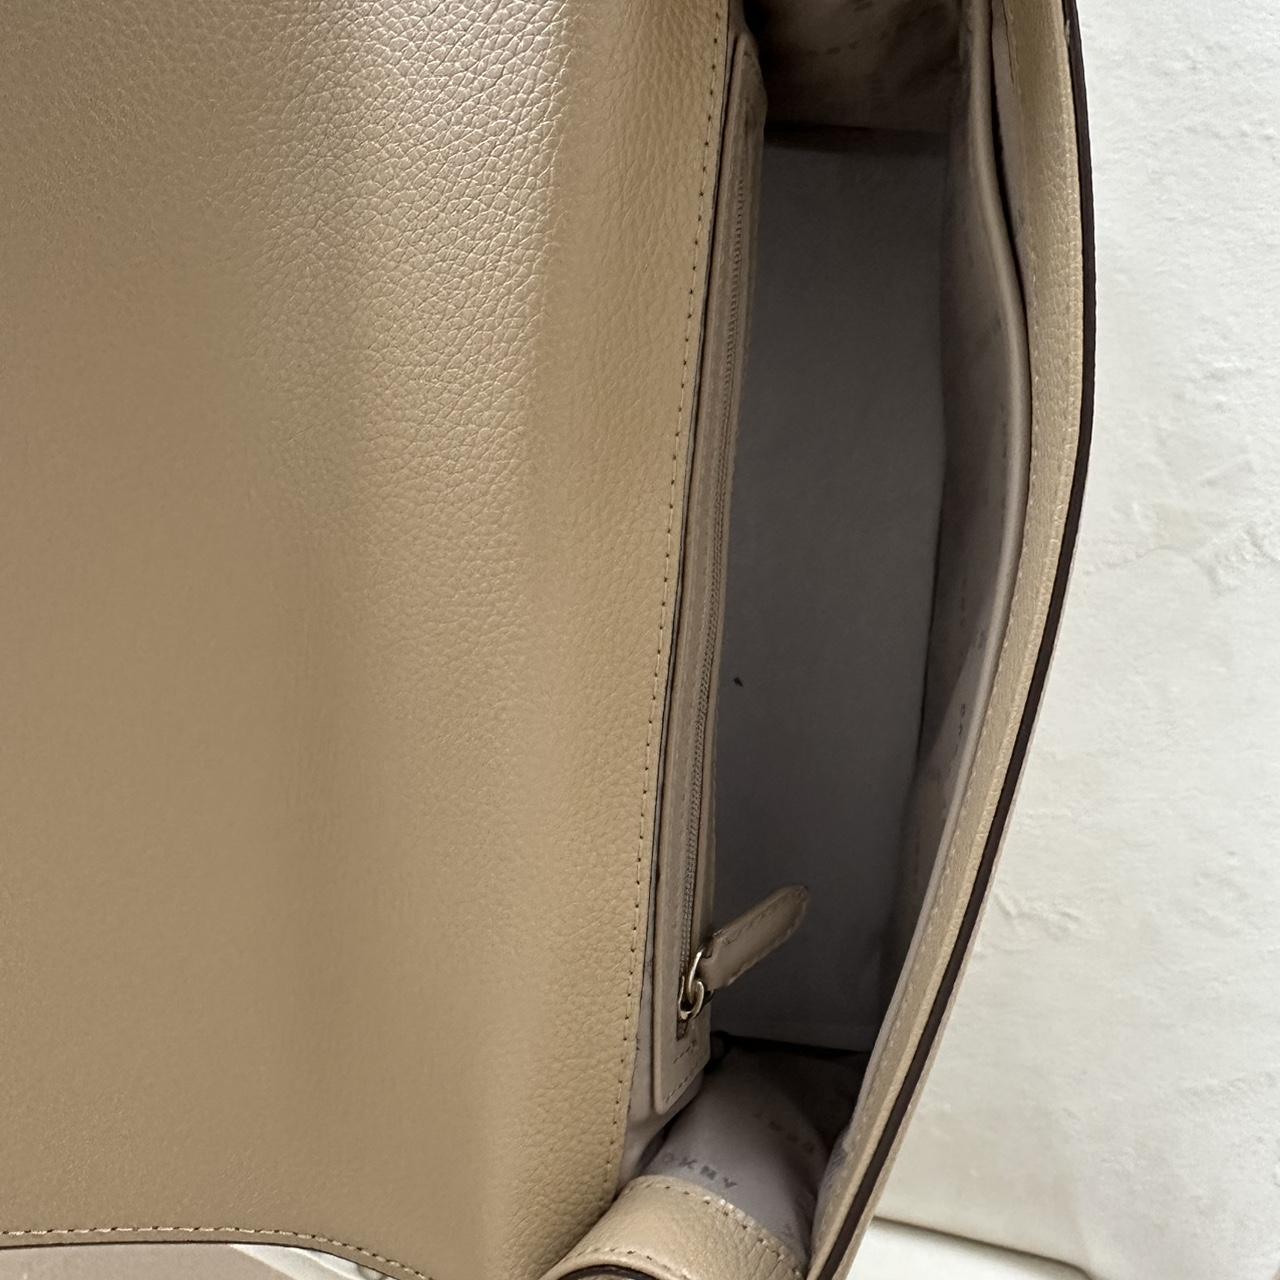 Medium size beige/nude DKNY bag. Used a few times - Depop